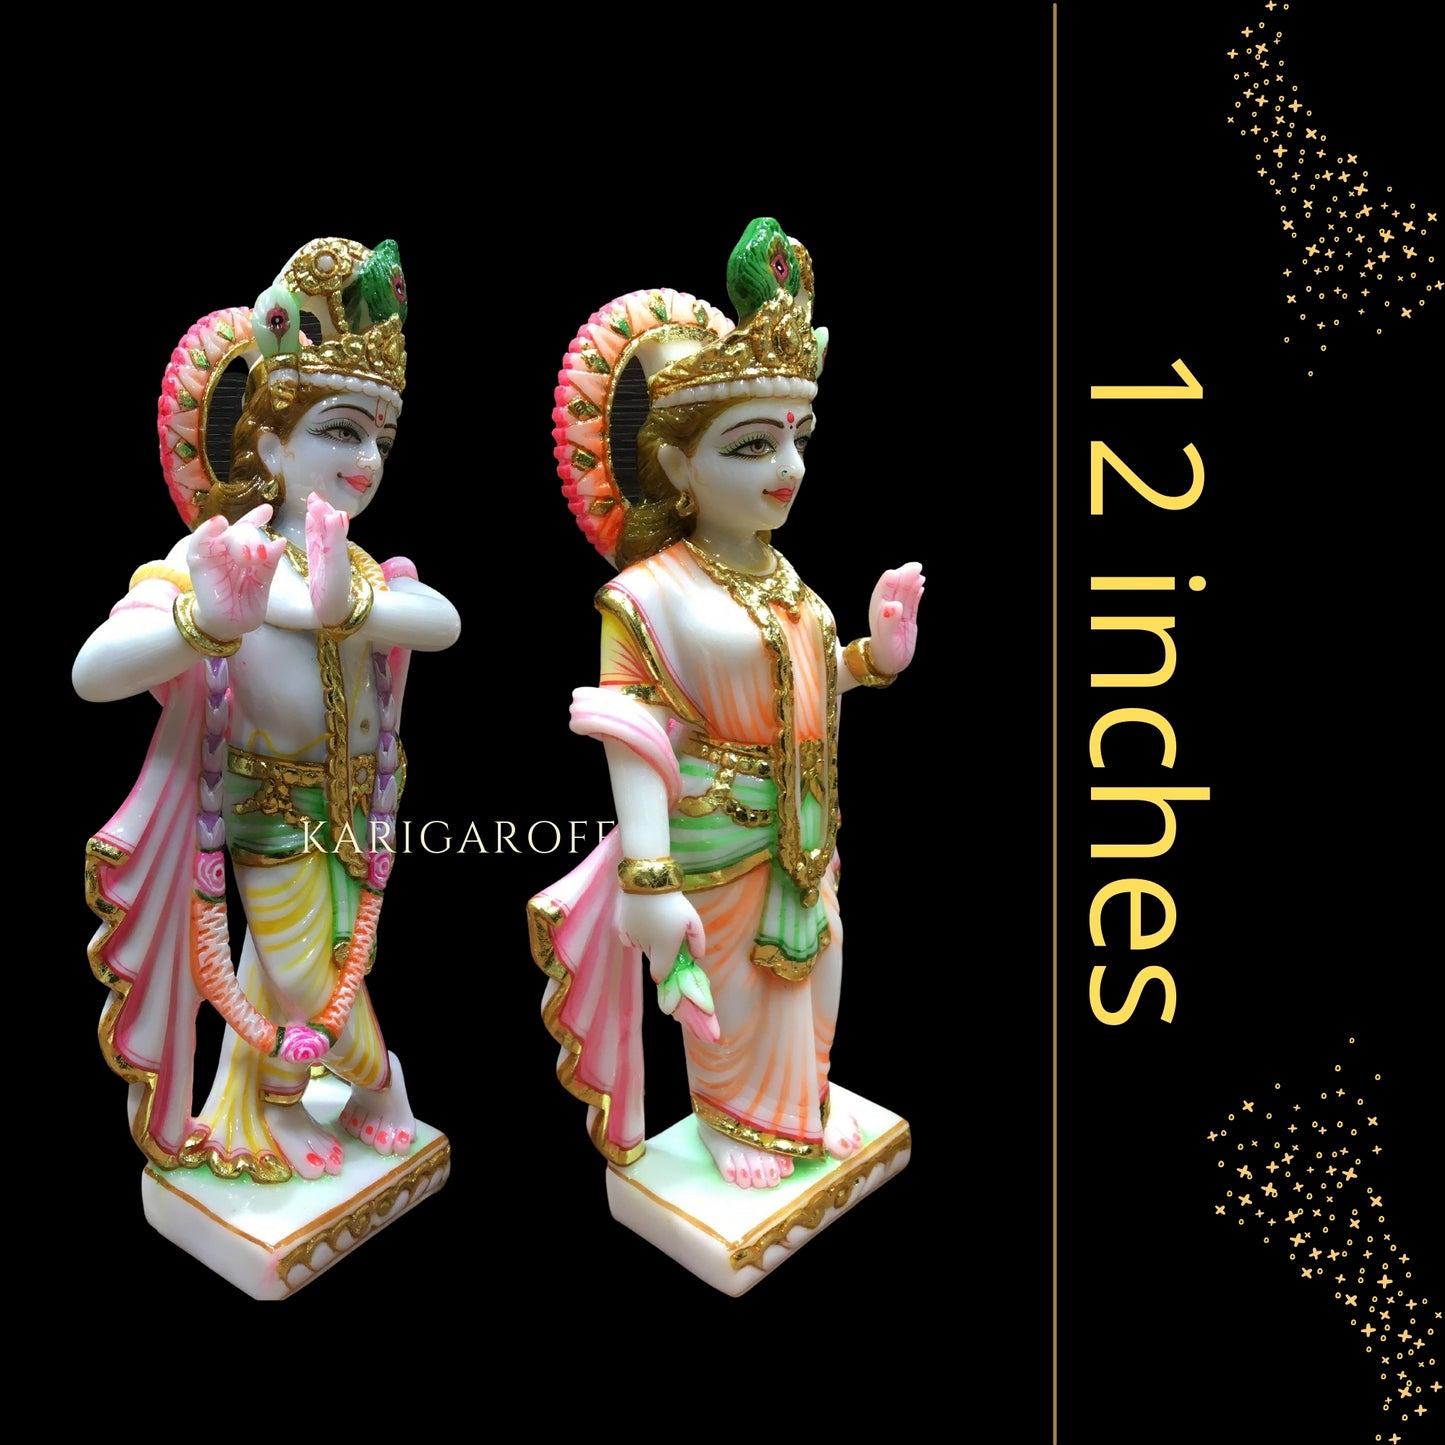 Estatua de Radha Krishna, pareja divina hindú, ídolo de pareja religiosa de mármol grande de 12 pulgadas, decoración del templo del hogar, Radha Krishna Murti pintado a mano, escultura especial para regalos de aniversario de inauguración de la casa